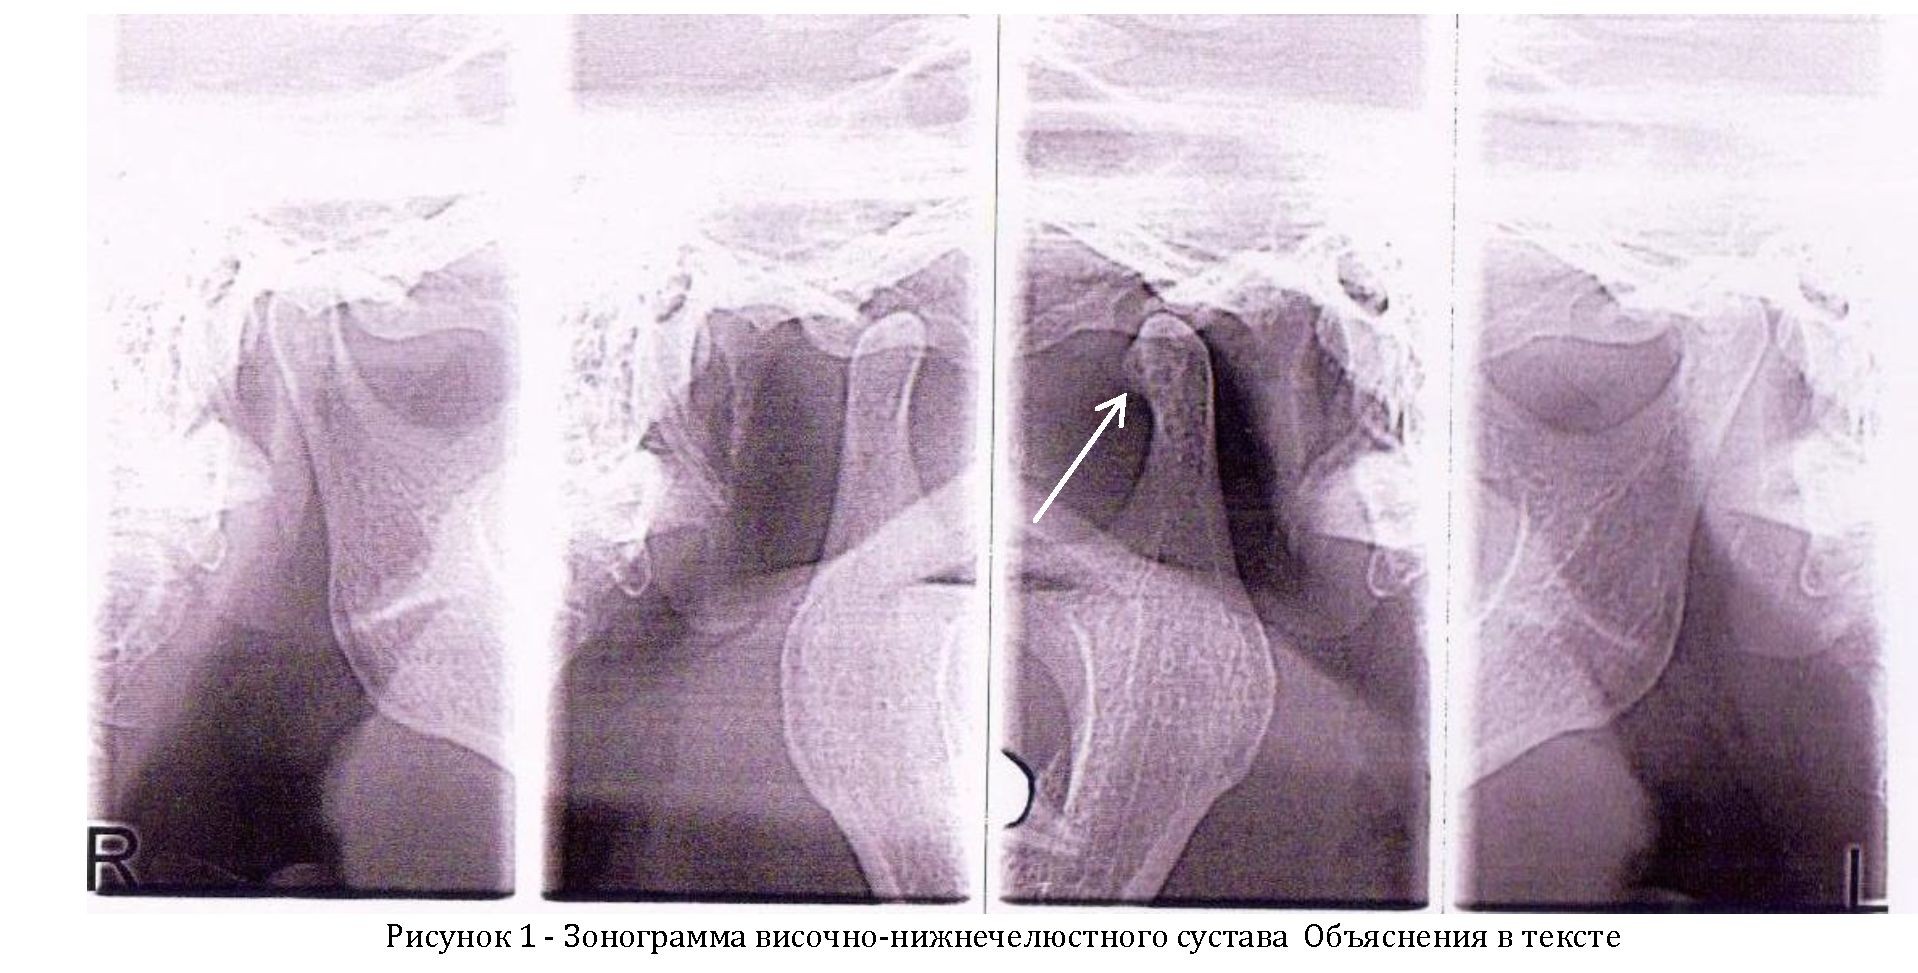 Редкий случай субхондральной кисты при остеоартрозе височно- нижнечелюстного сустава